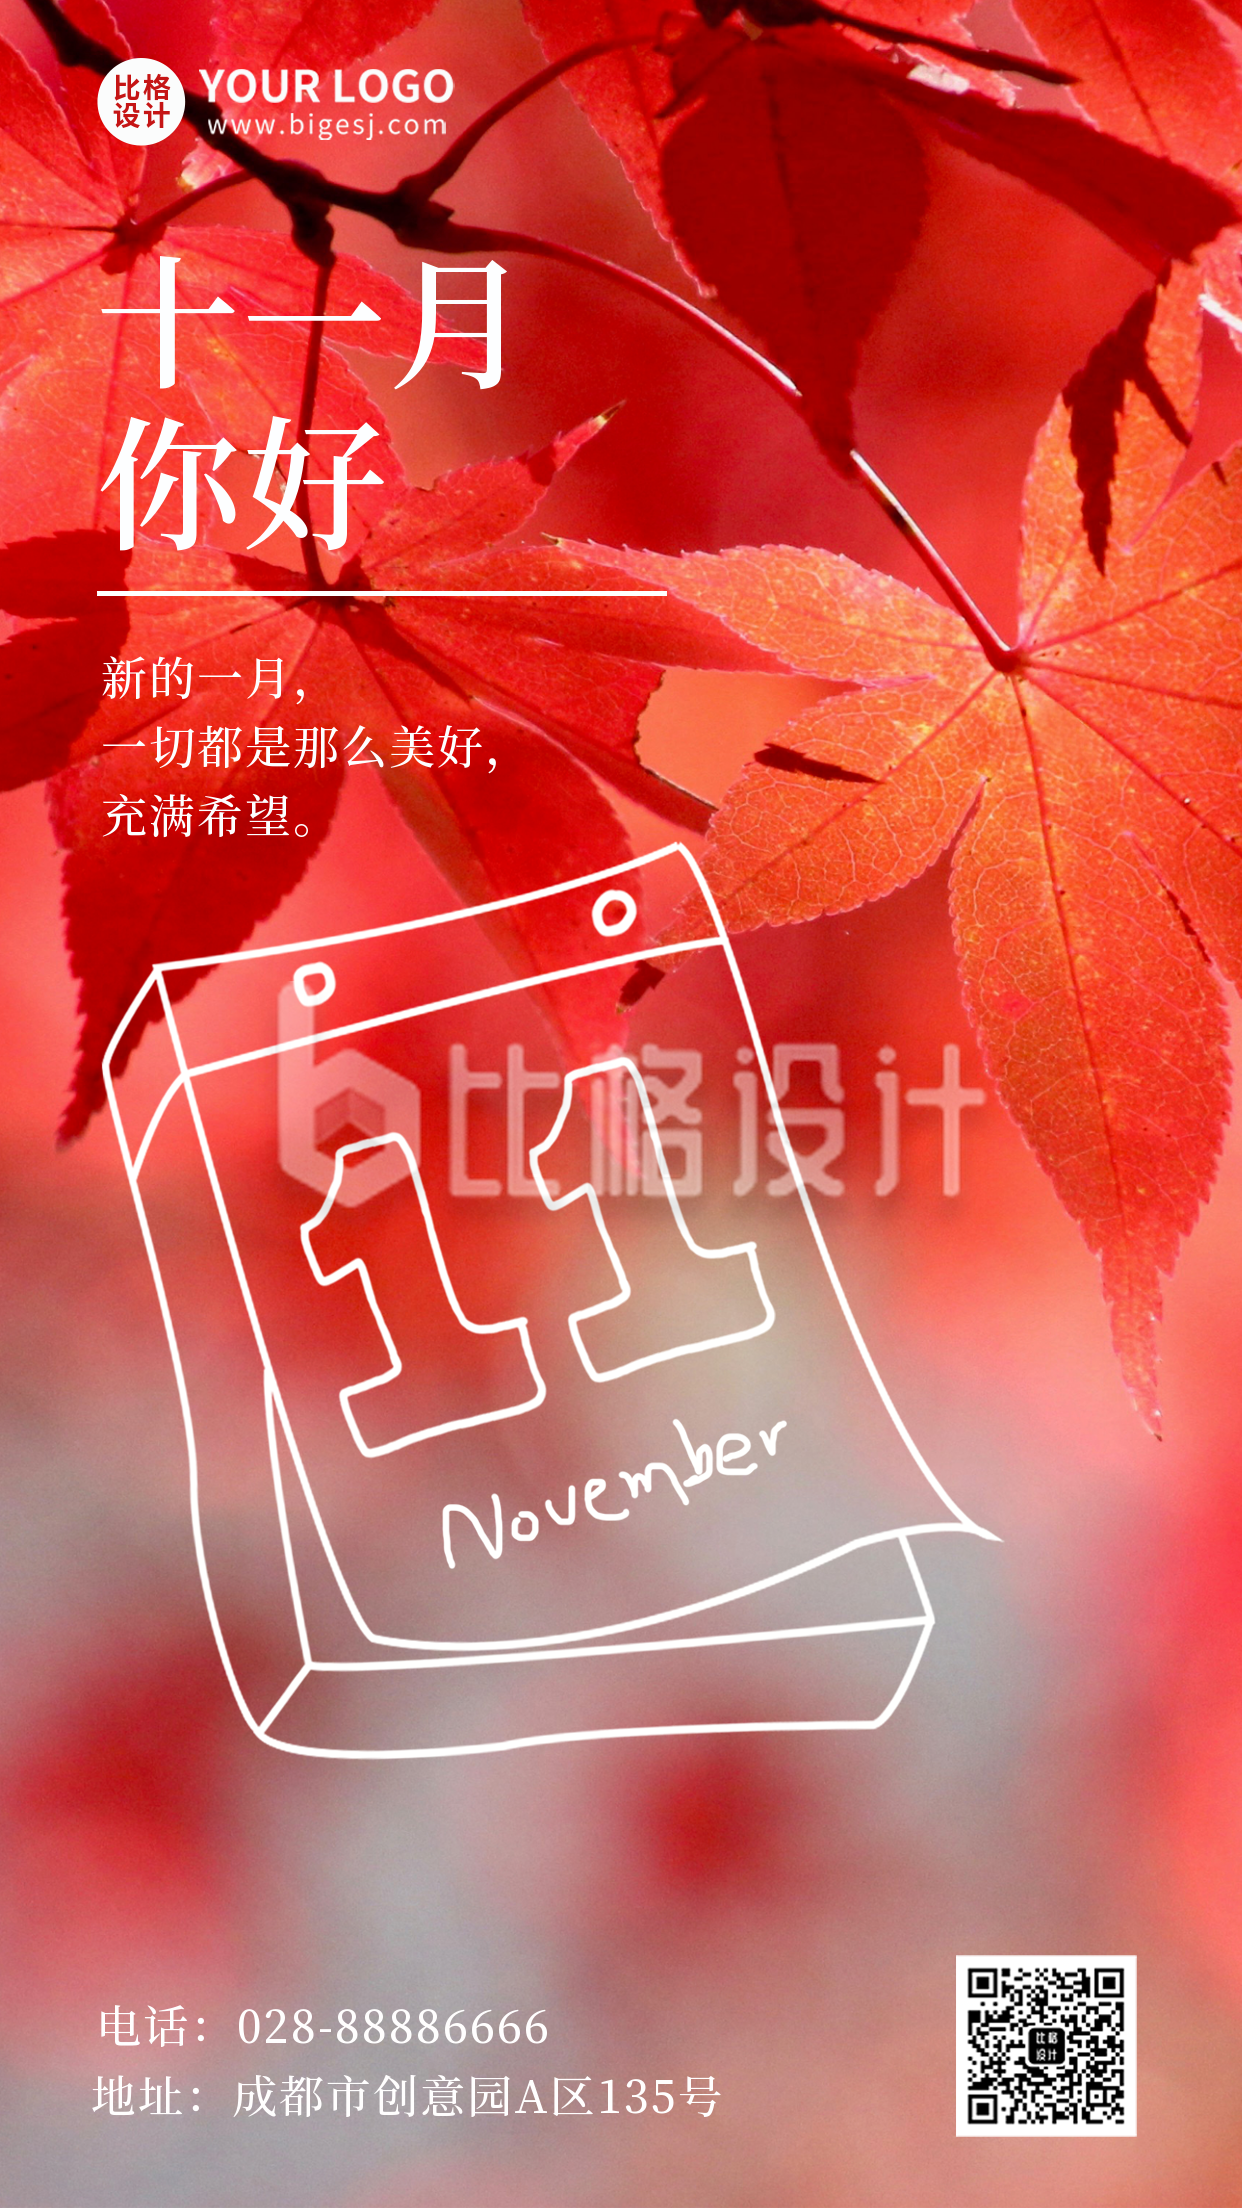 十一月枫叶问候语文案宣传手机海报